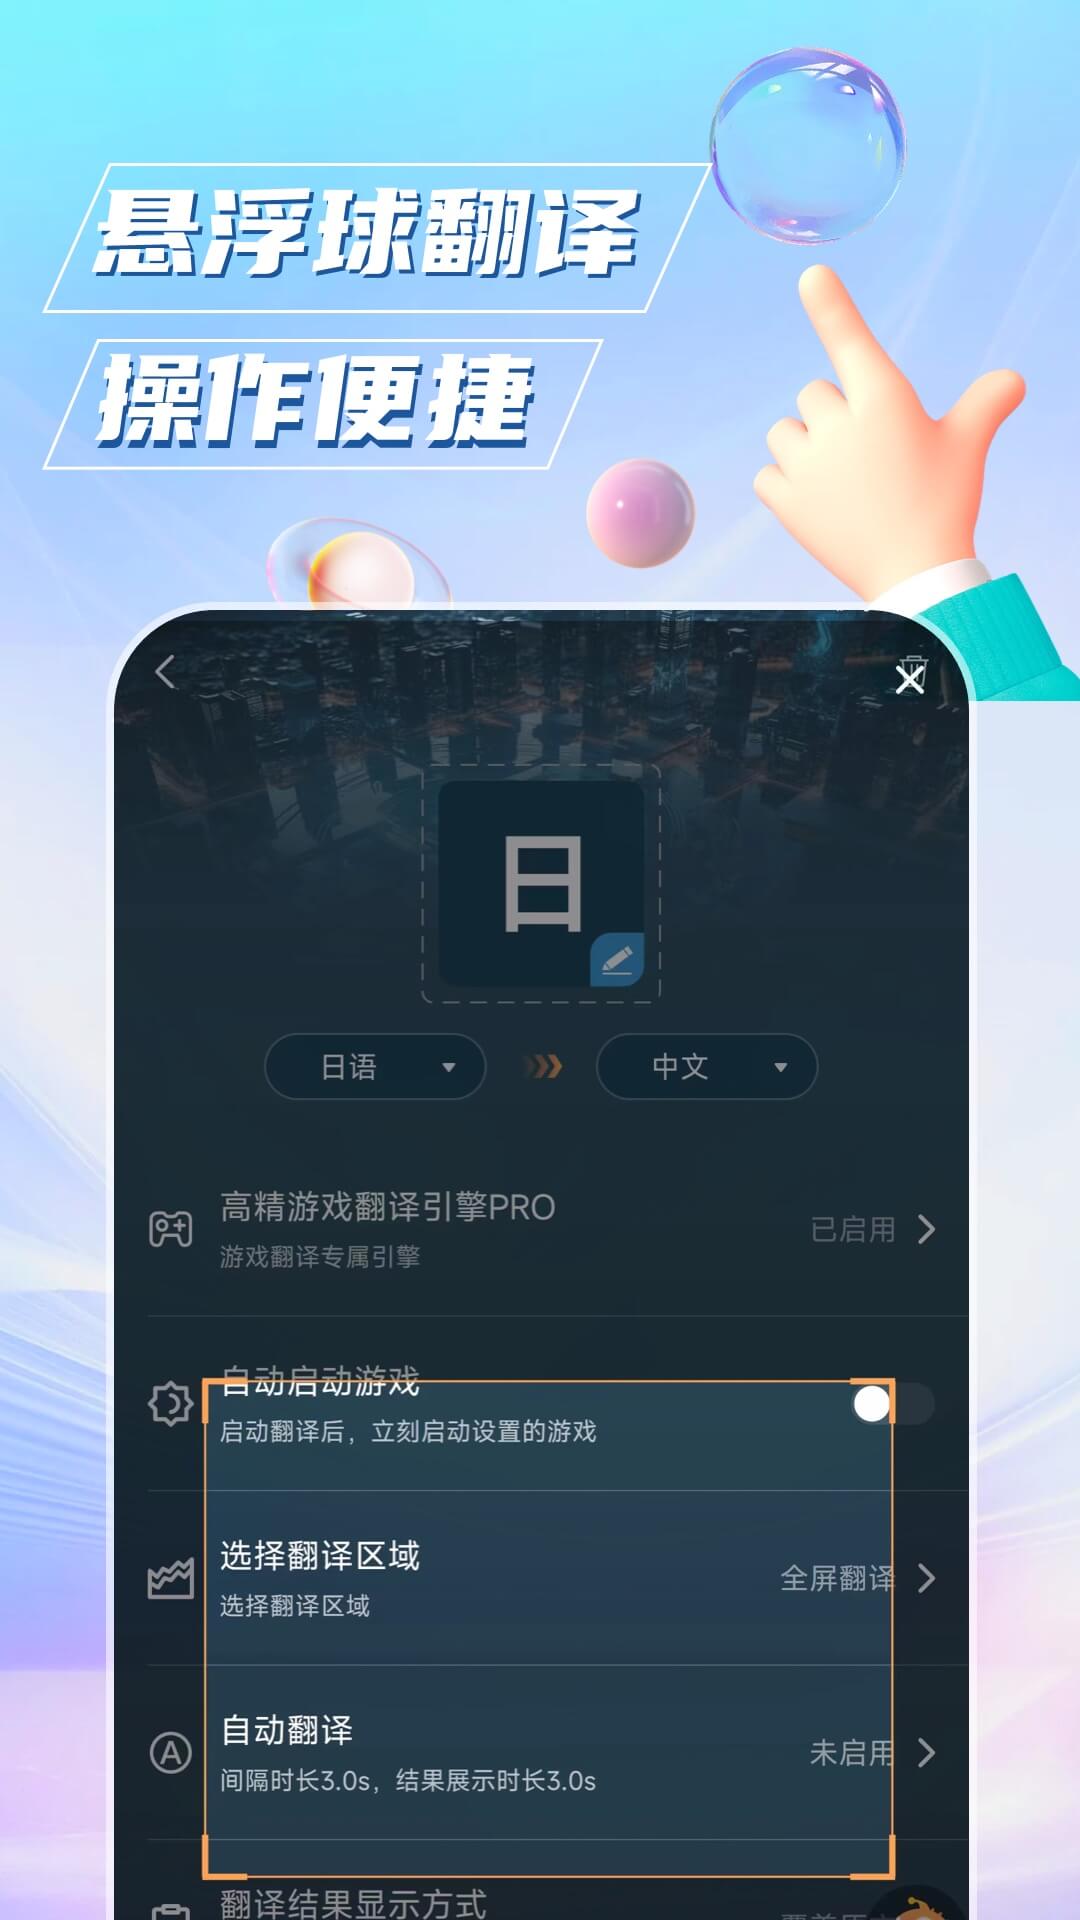 泡泡游戏翻译app最新版v1.5.6 安卓版